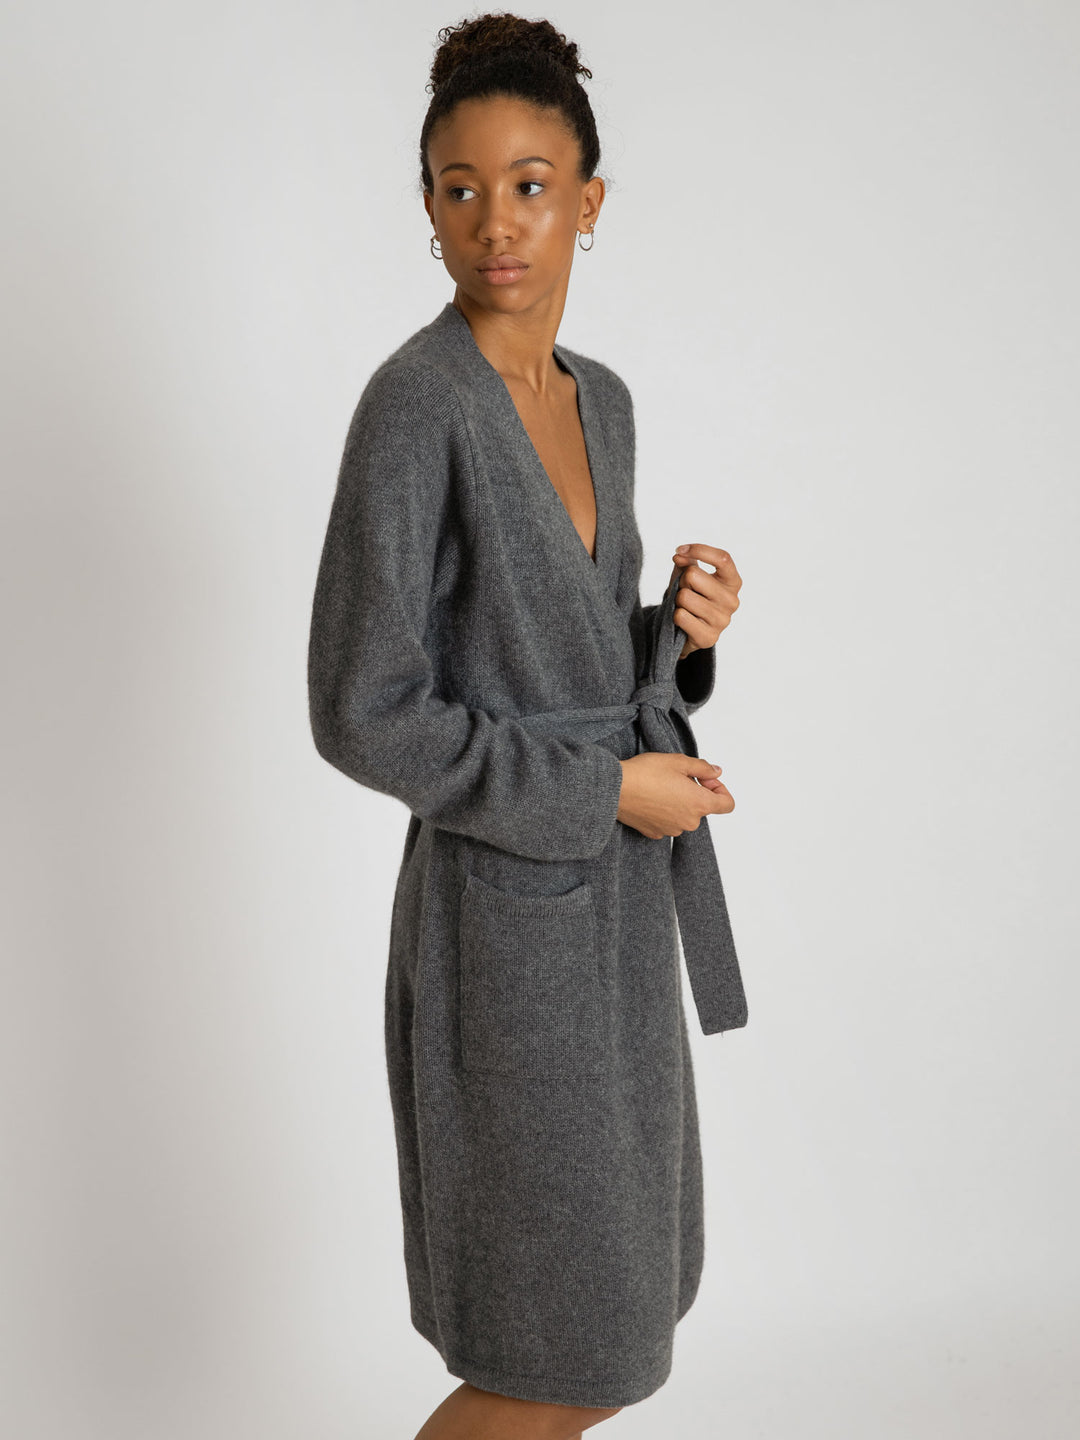 Cashmere robe Lux in 100% cashmere by Kashmina, dark grey. Scandinavian design.